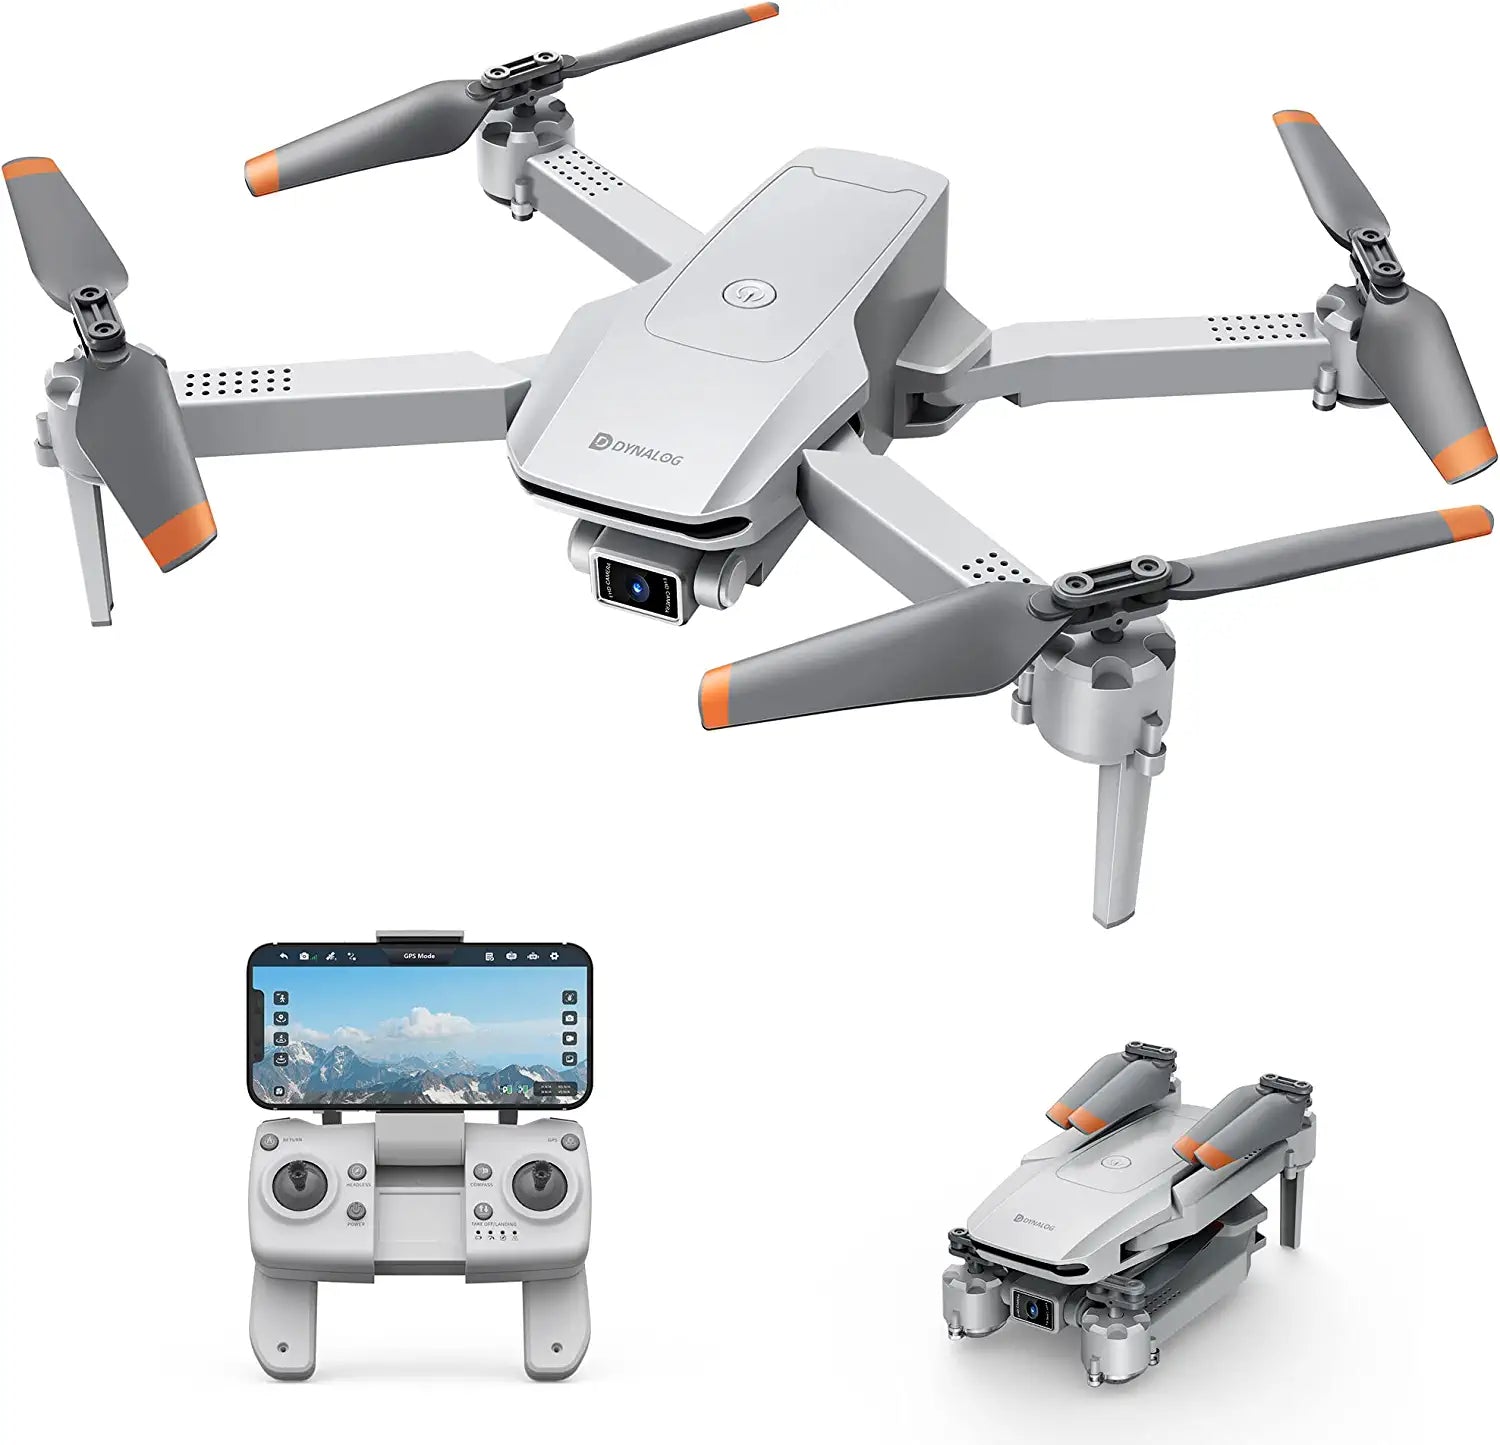 Dynalog DR-DG600C GPS-drone voor volwassenen - RC Quadcopter met Auto Return, Follow Me, Gesture Control, Point of Interest, Waypoints, Headless-modus, 2 batterijen, compatibel met VR-bril